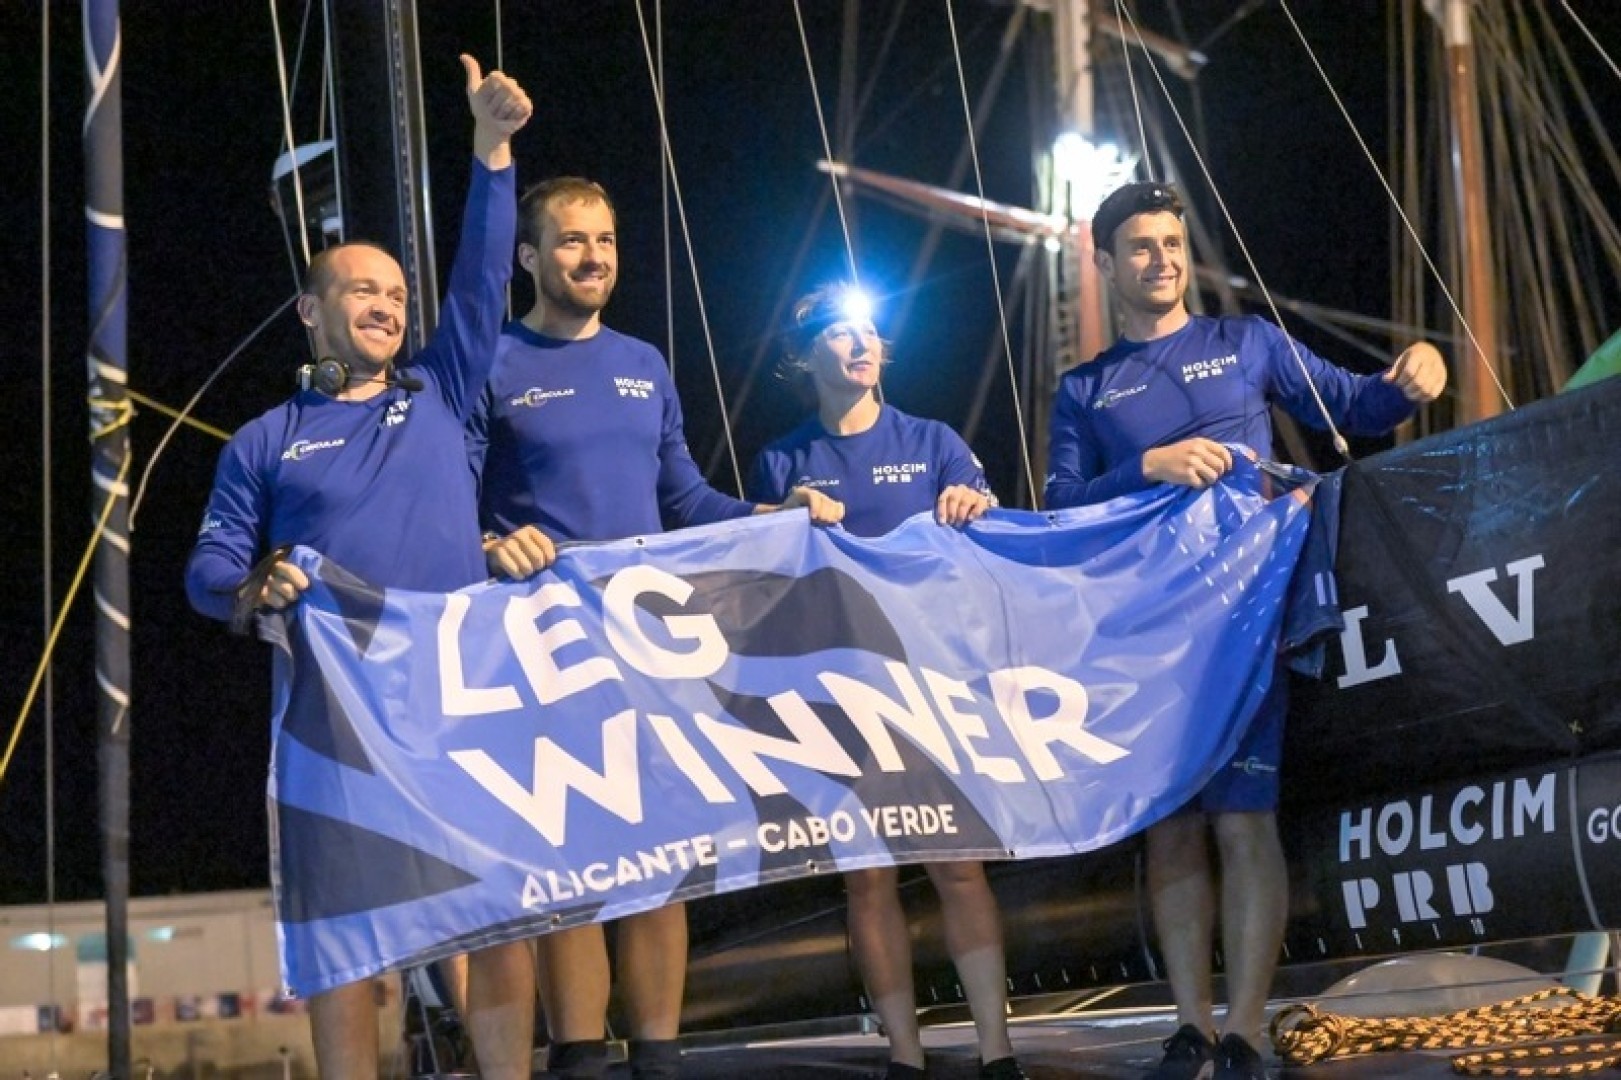 21 January 2023, Holcim - PRB Team crew rises the Leg Winner flag in Cabo Verde.
© Sailing Energy / The Ocean Race